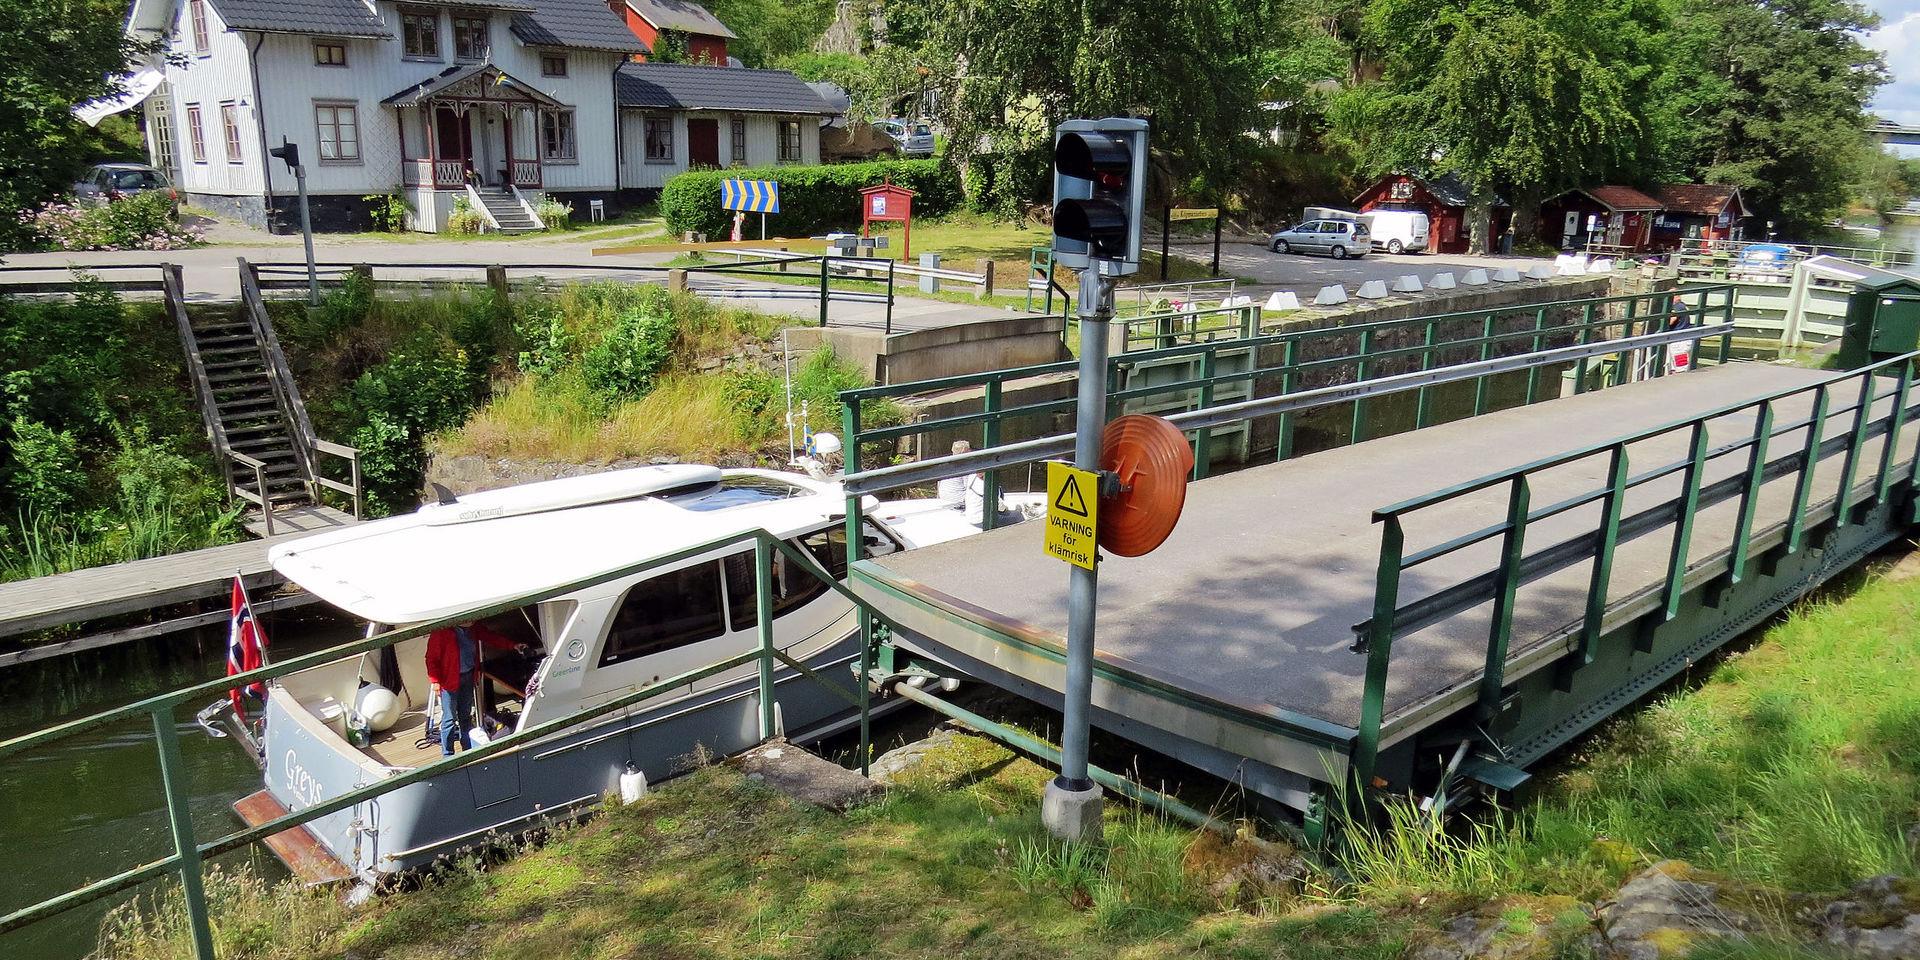  En norska motorbåt passerar svängbron i Köpmannebro. 